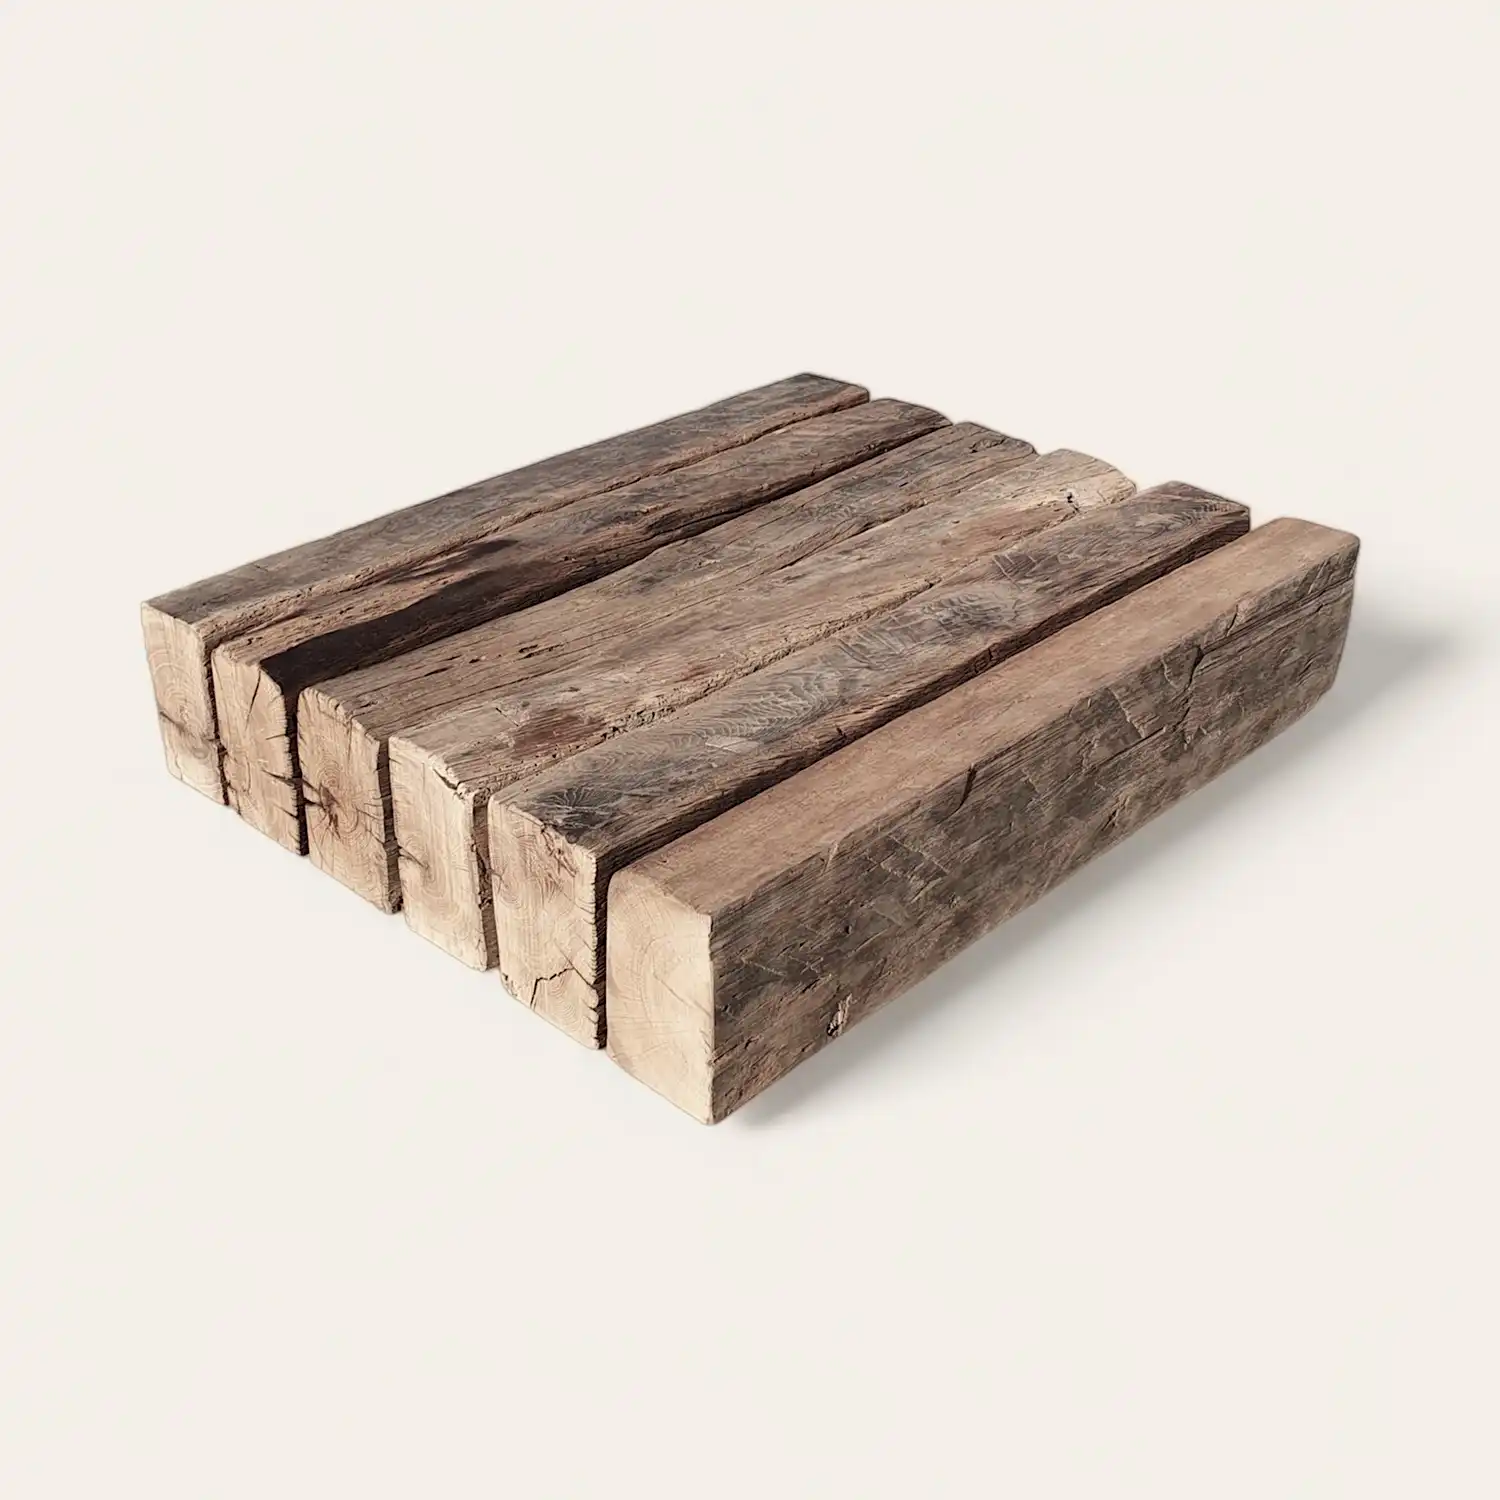  Un morceau de bois rustique repose sur une surface blanche. 